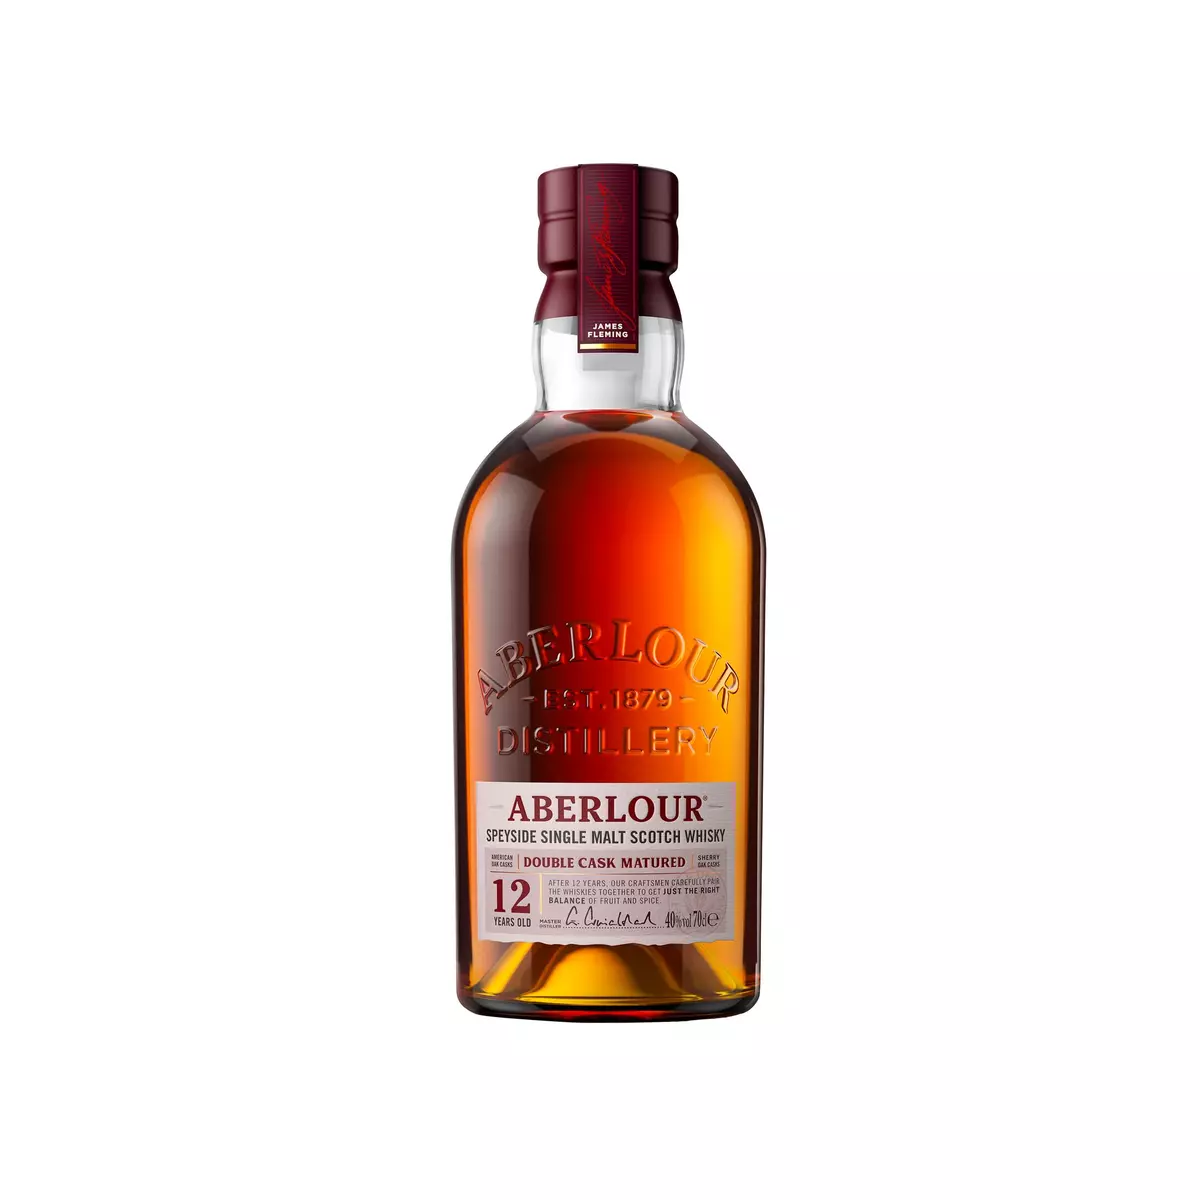 ABERLOUR Scotch whisky écossais single malt 12 ans 40% 70cl